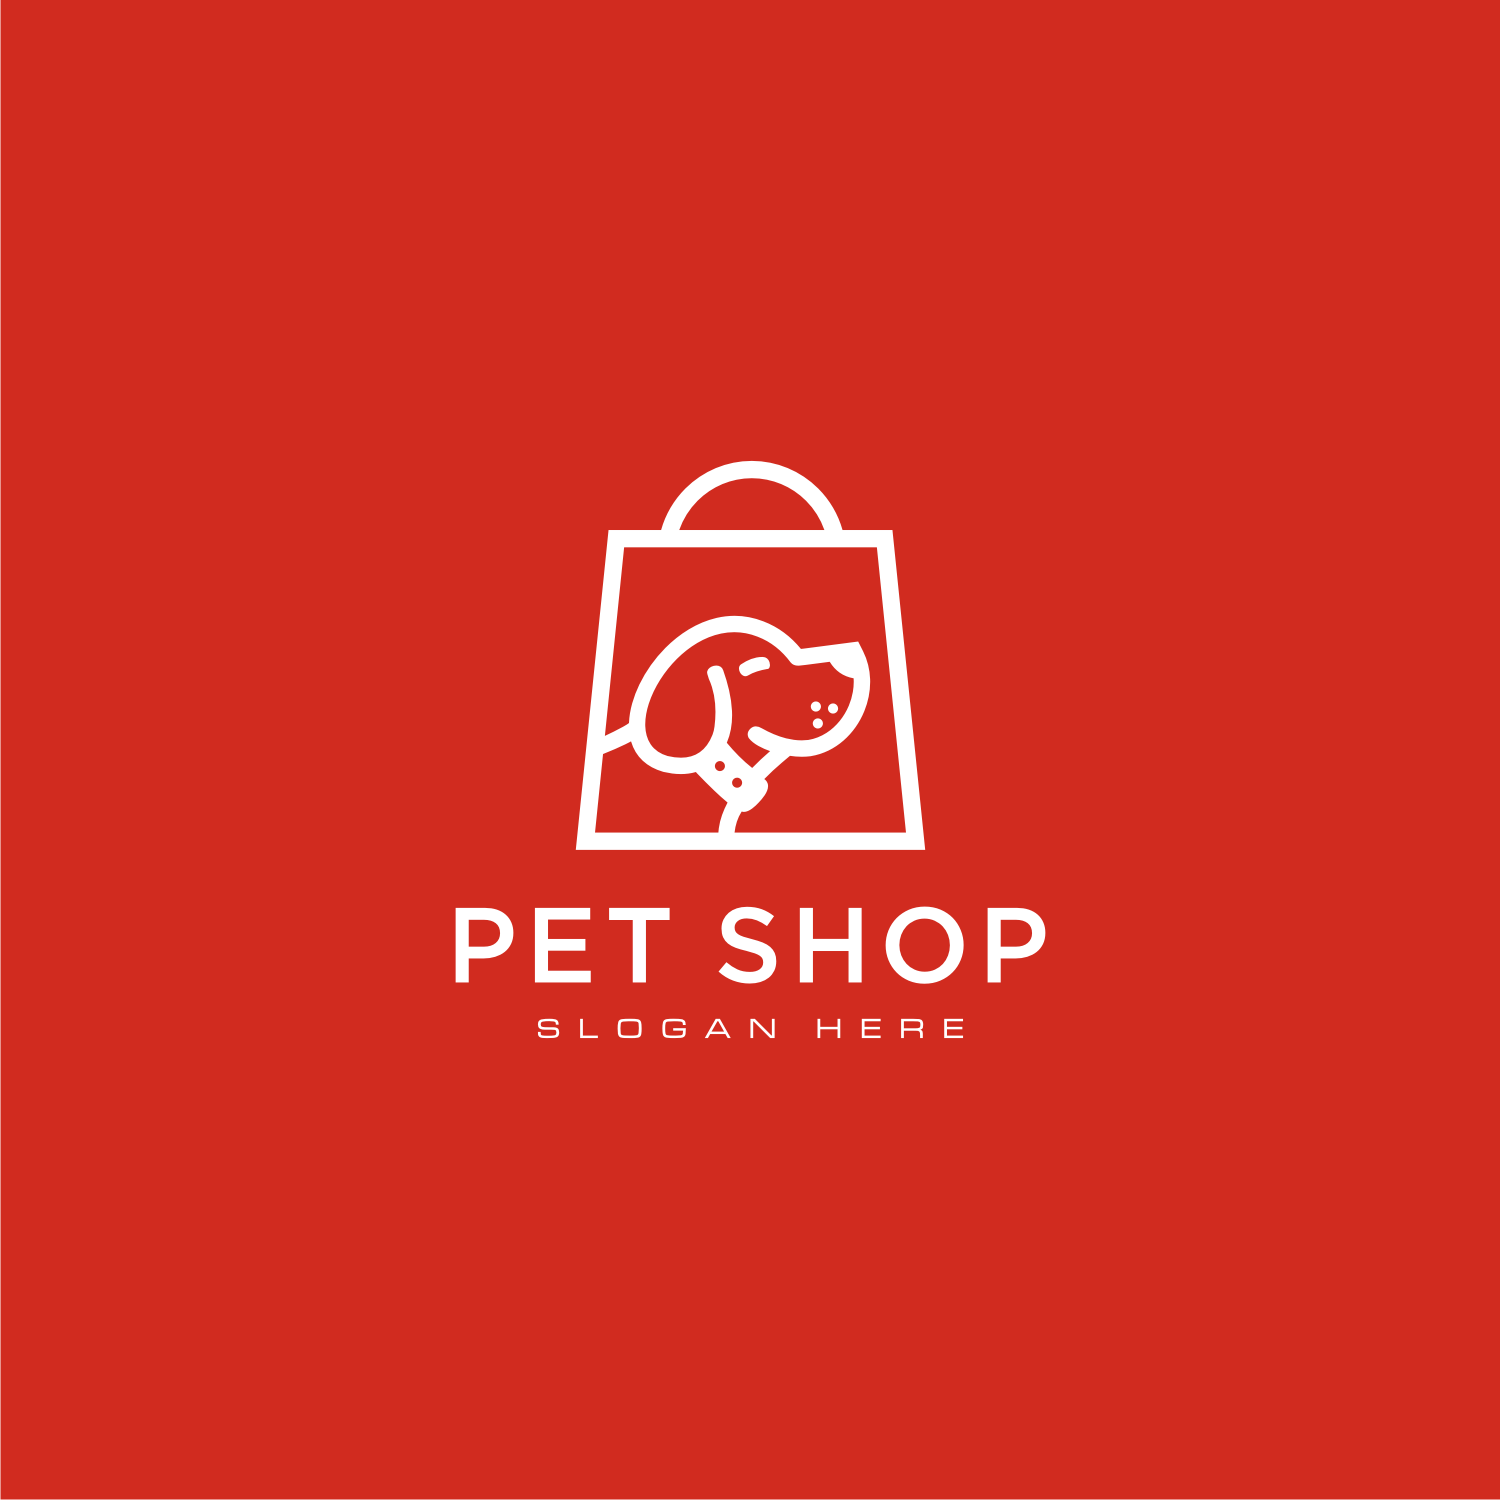 Dog Shop Logo Vector Design Preview Image.